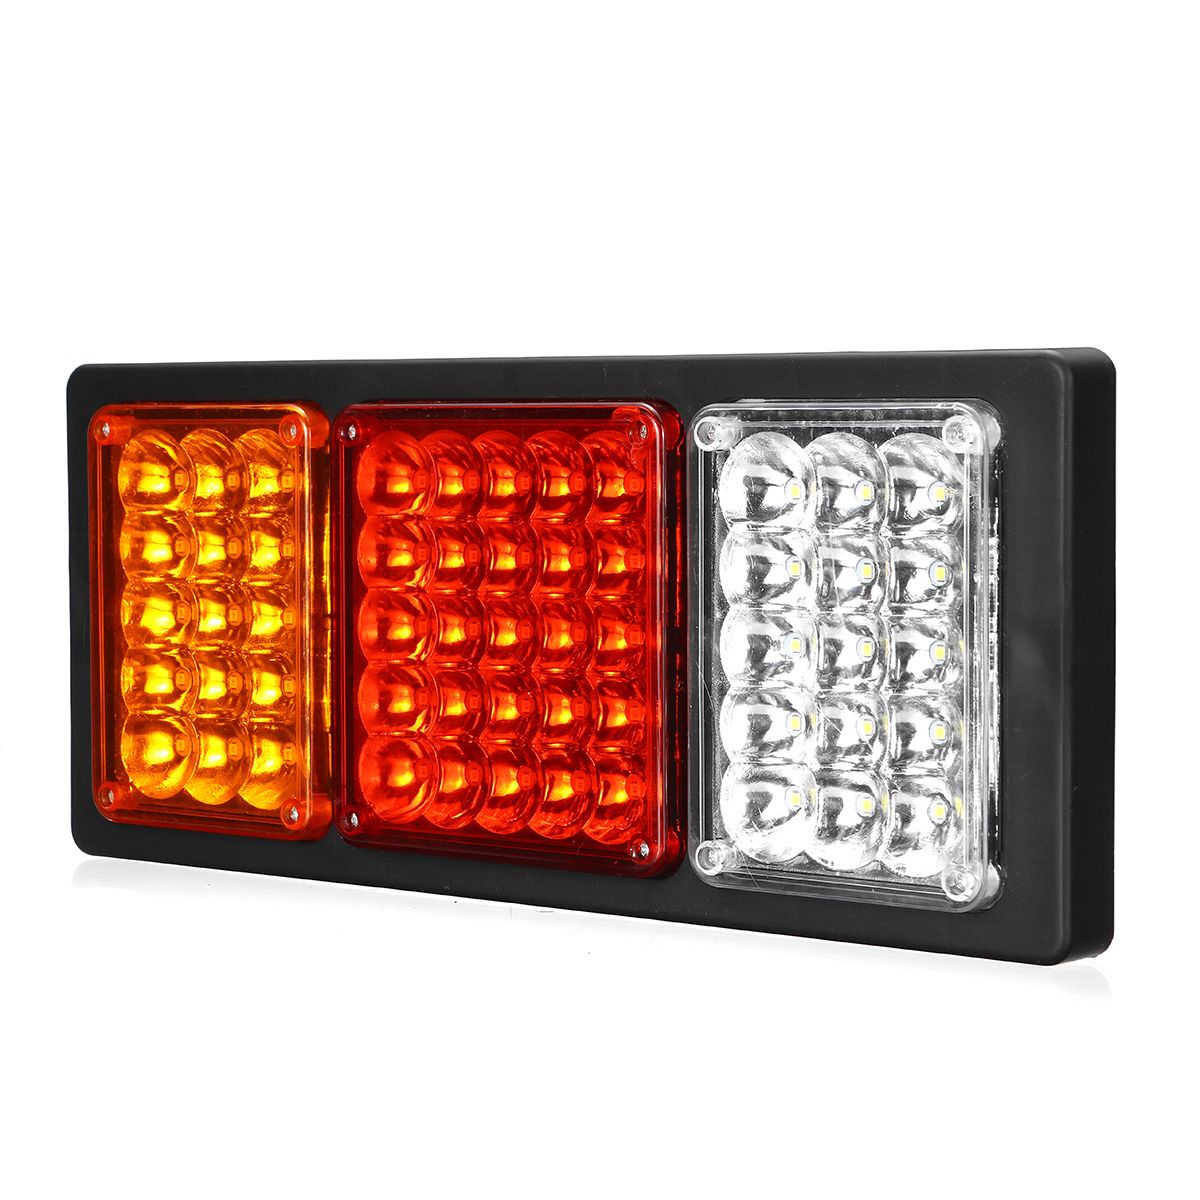 2Pcs-24V-55LED-Car-Tail-Lights-Indicator-Reversing-Lamps-For-Trailer-Truck-1686037